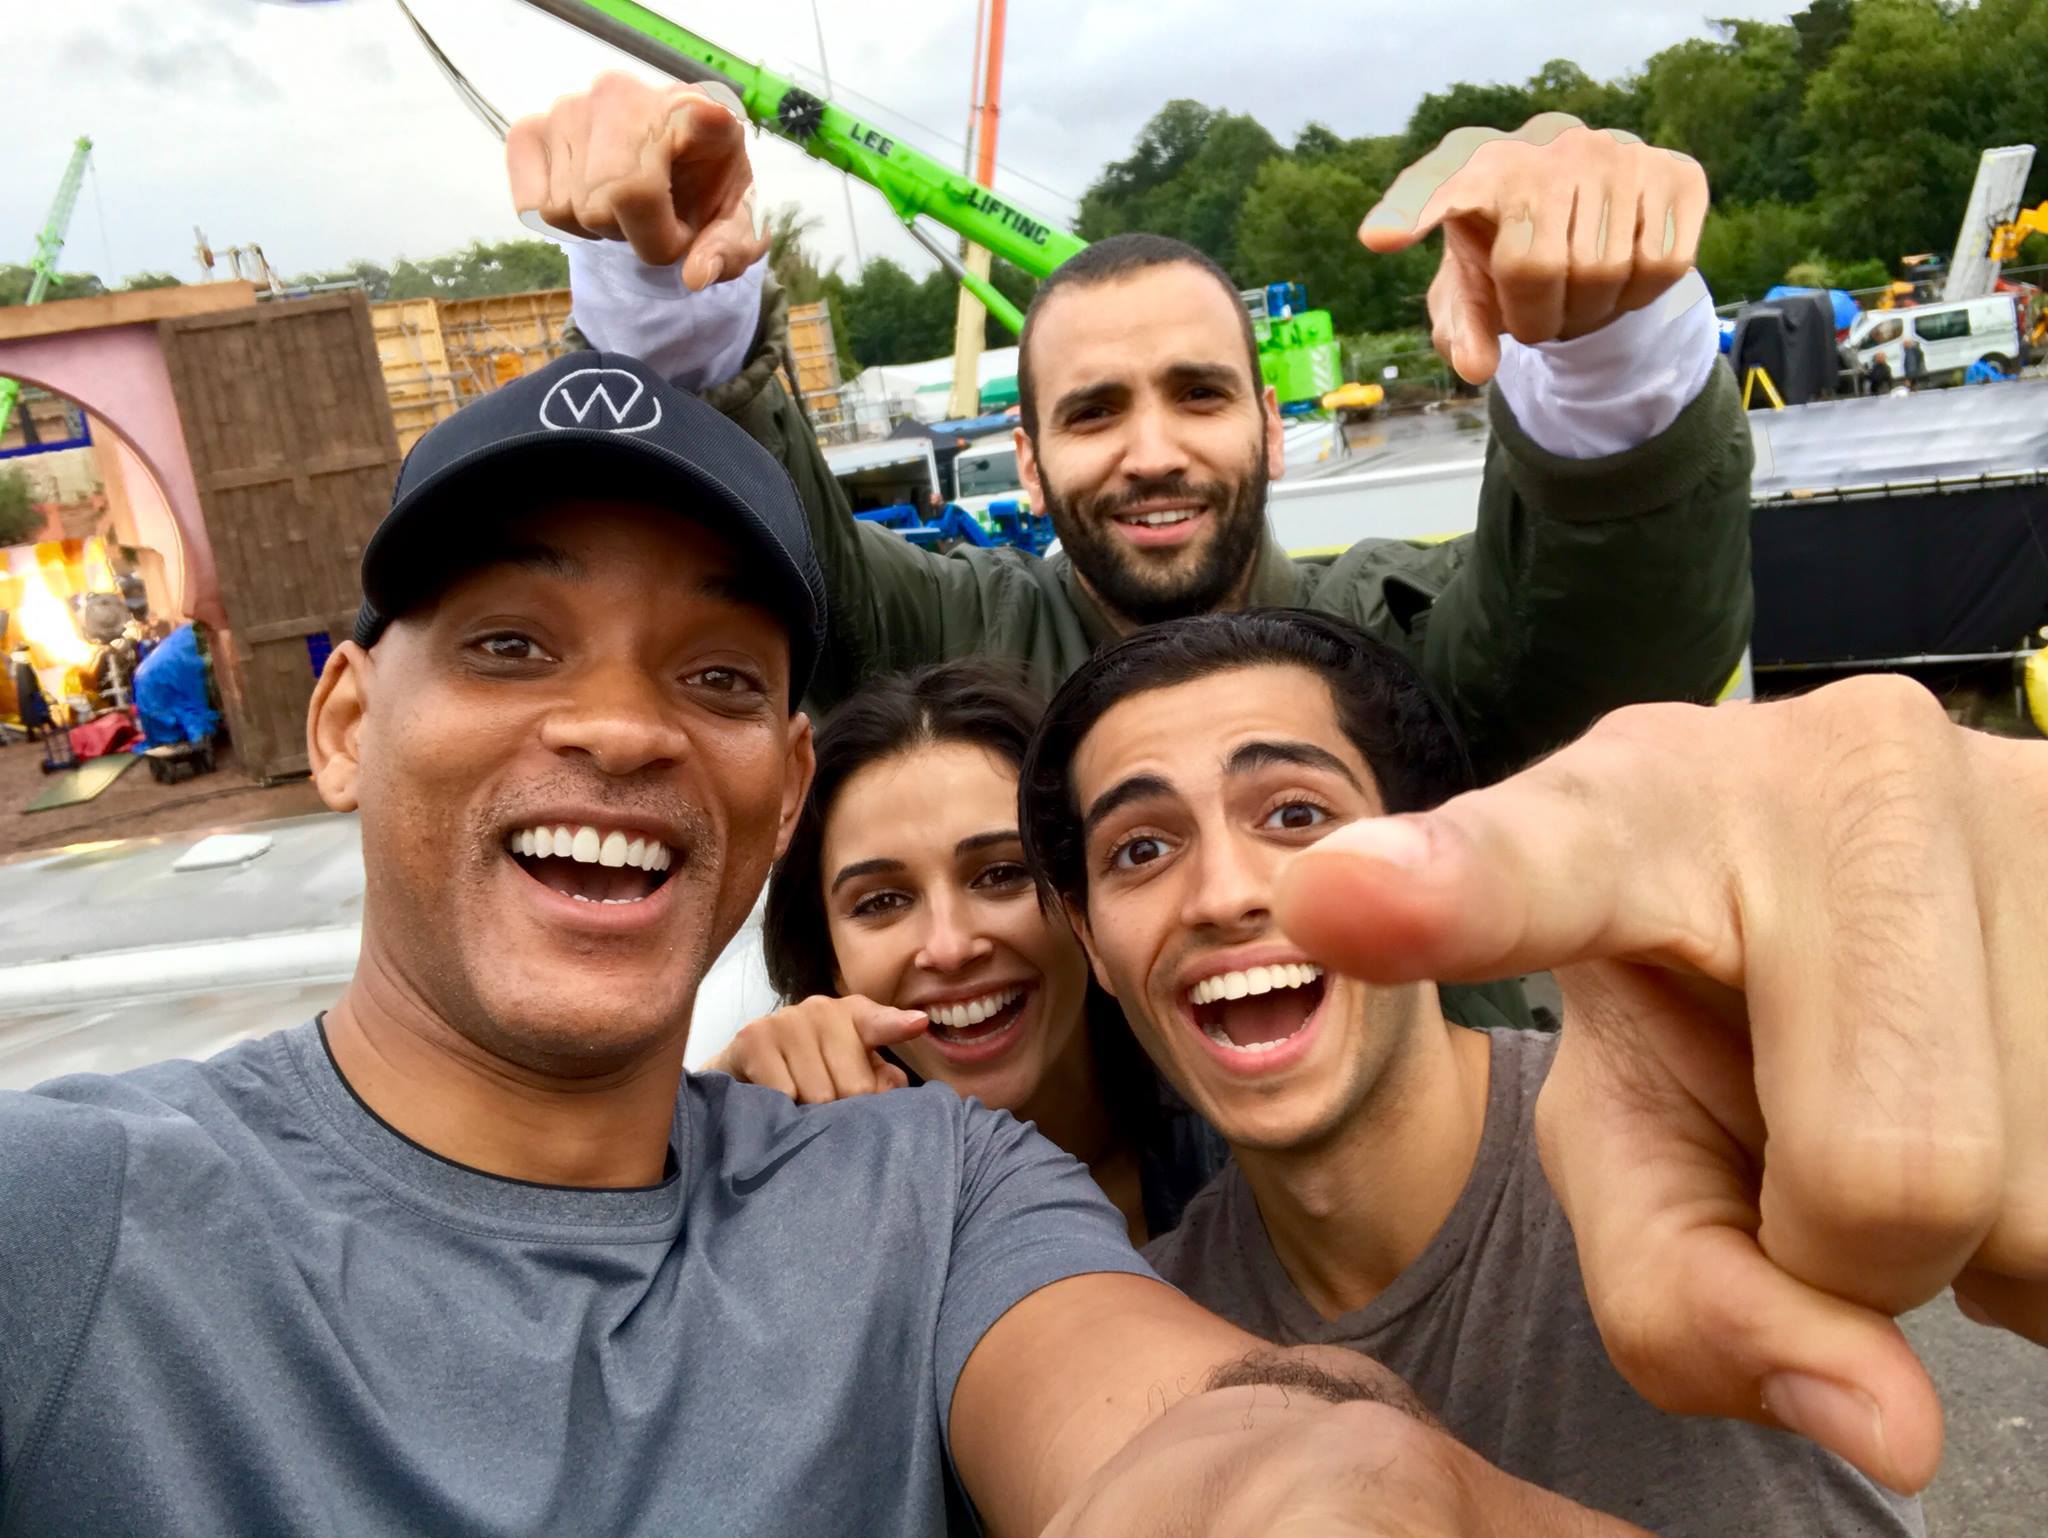 Disney’s Live-Action Aladdin Cast is Set!